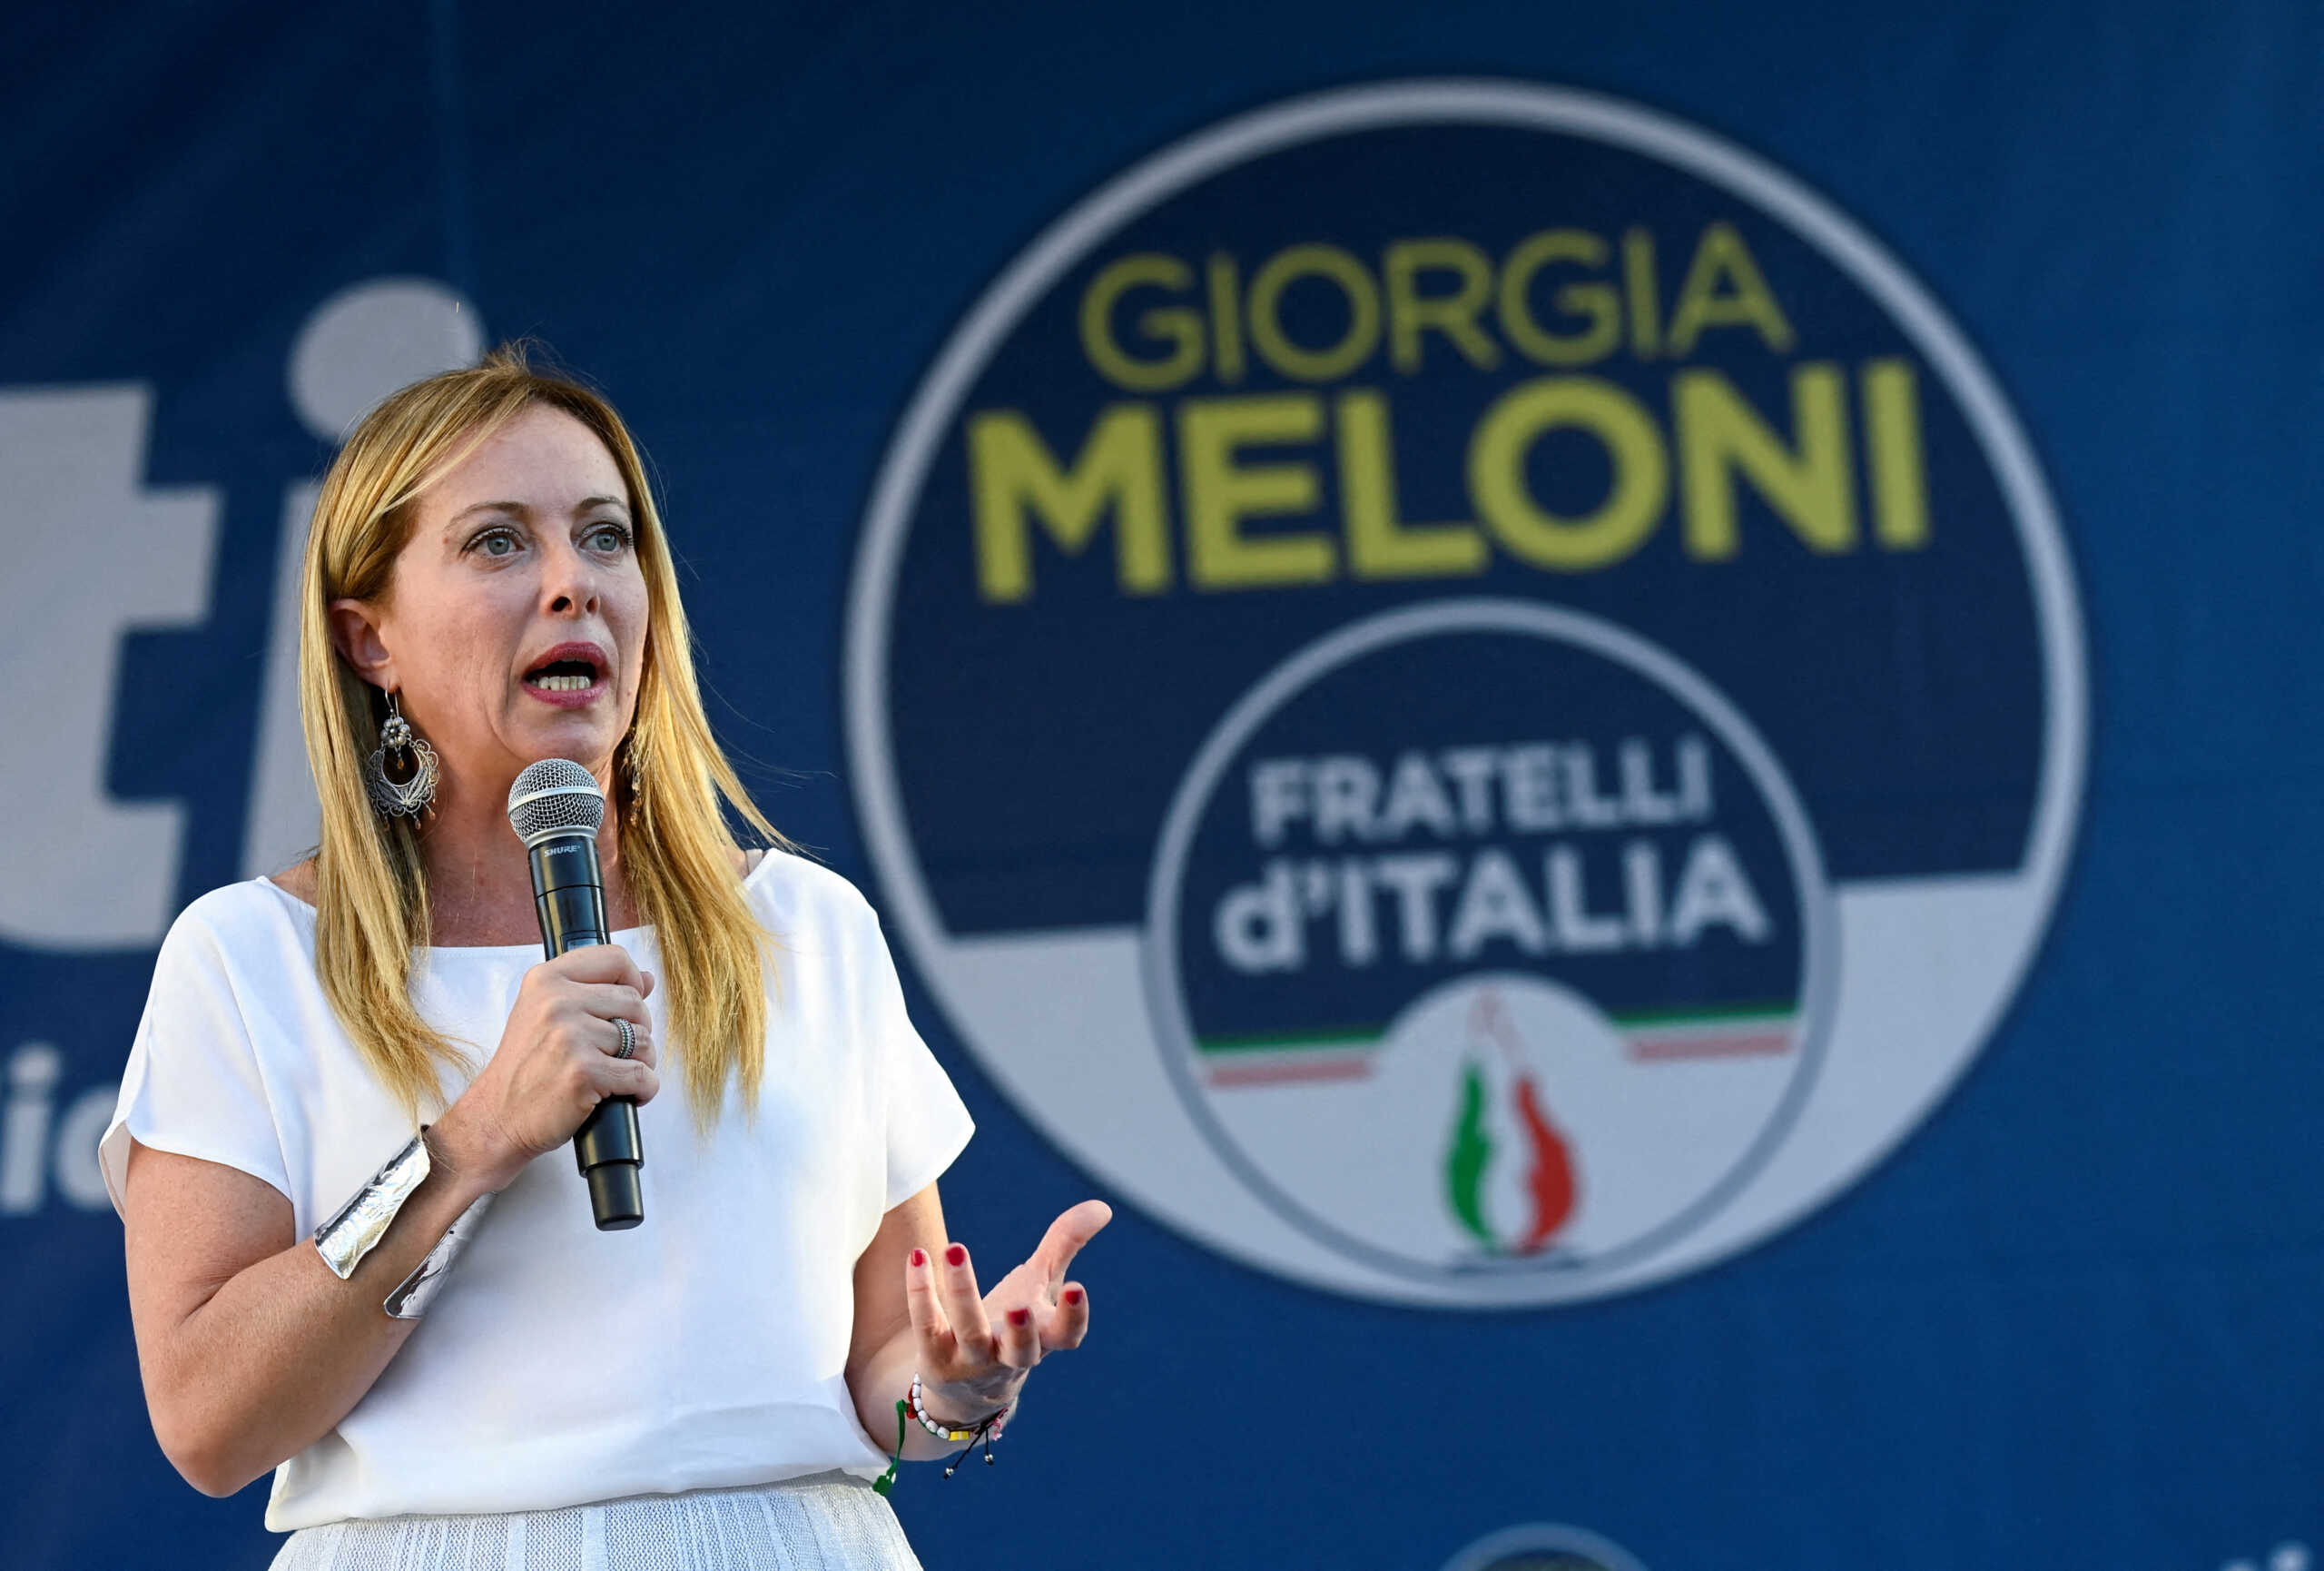 Εκλογές στην Ιταλία: Πρωθυπουργός η Τζόρτζια Μελόνι ακόμη και αν βγει δεύτερη – Ο εκλογικός νόμος και οι λεπτομέρειες